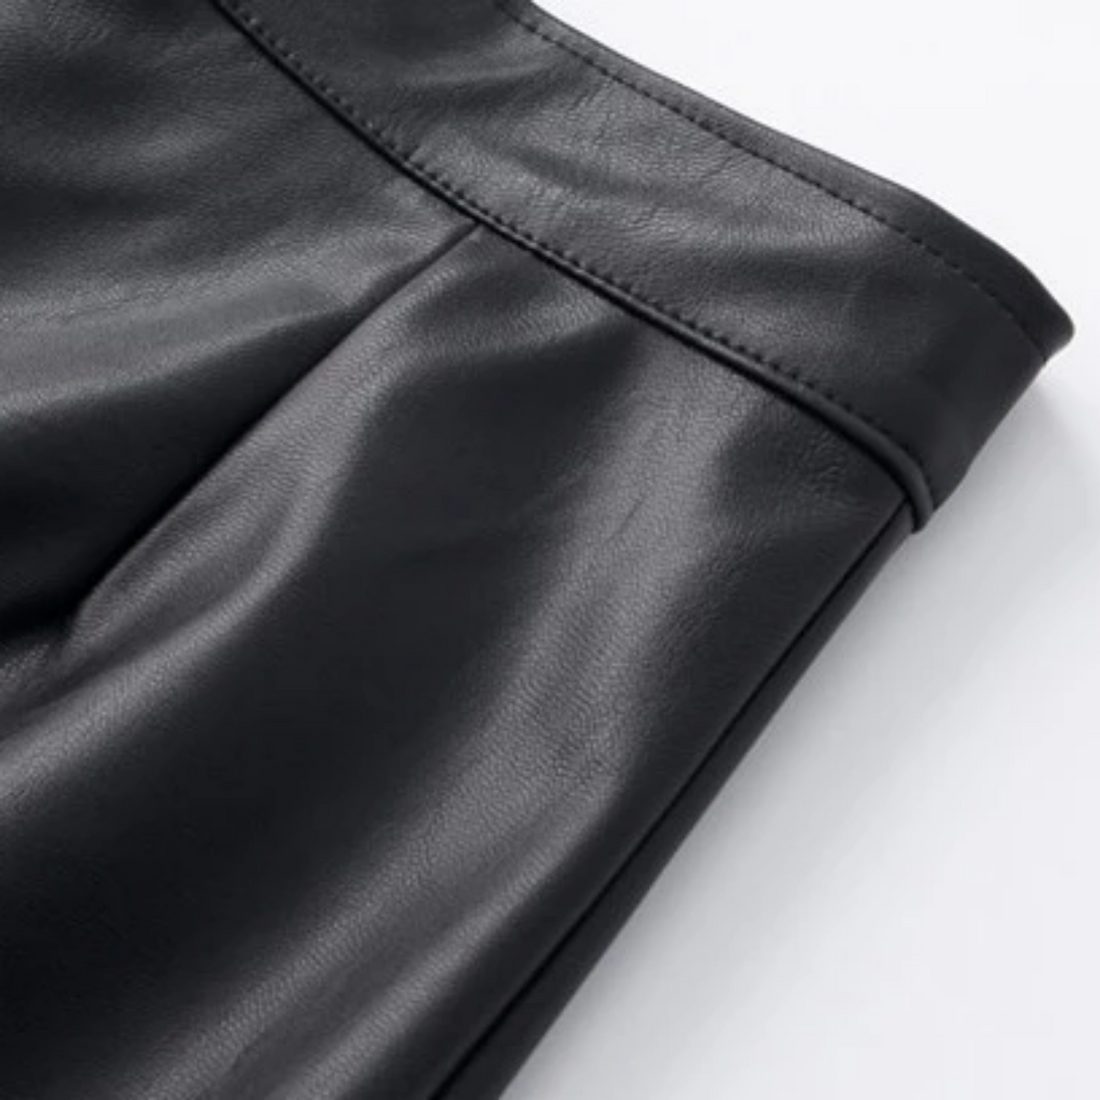 Women's Spring/Summer Casual High-Waist PU Leather Skirt